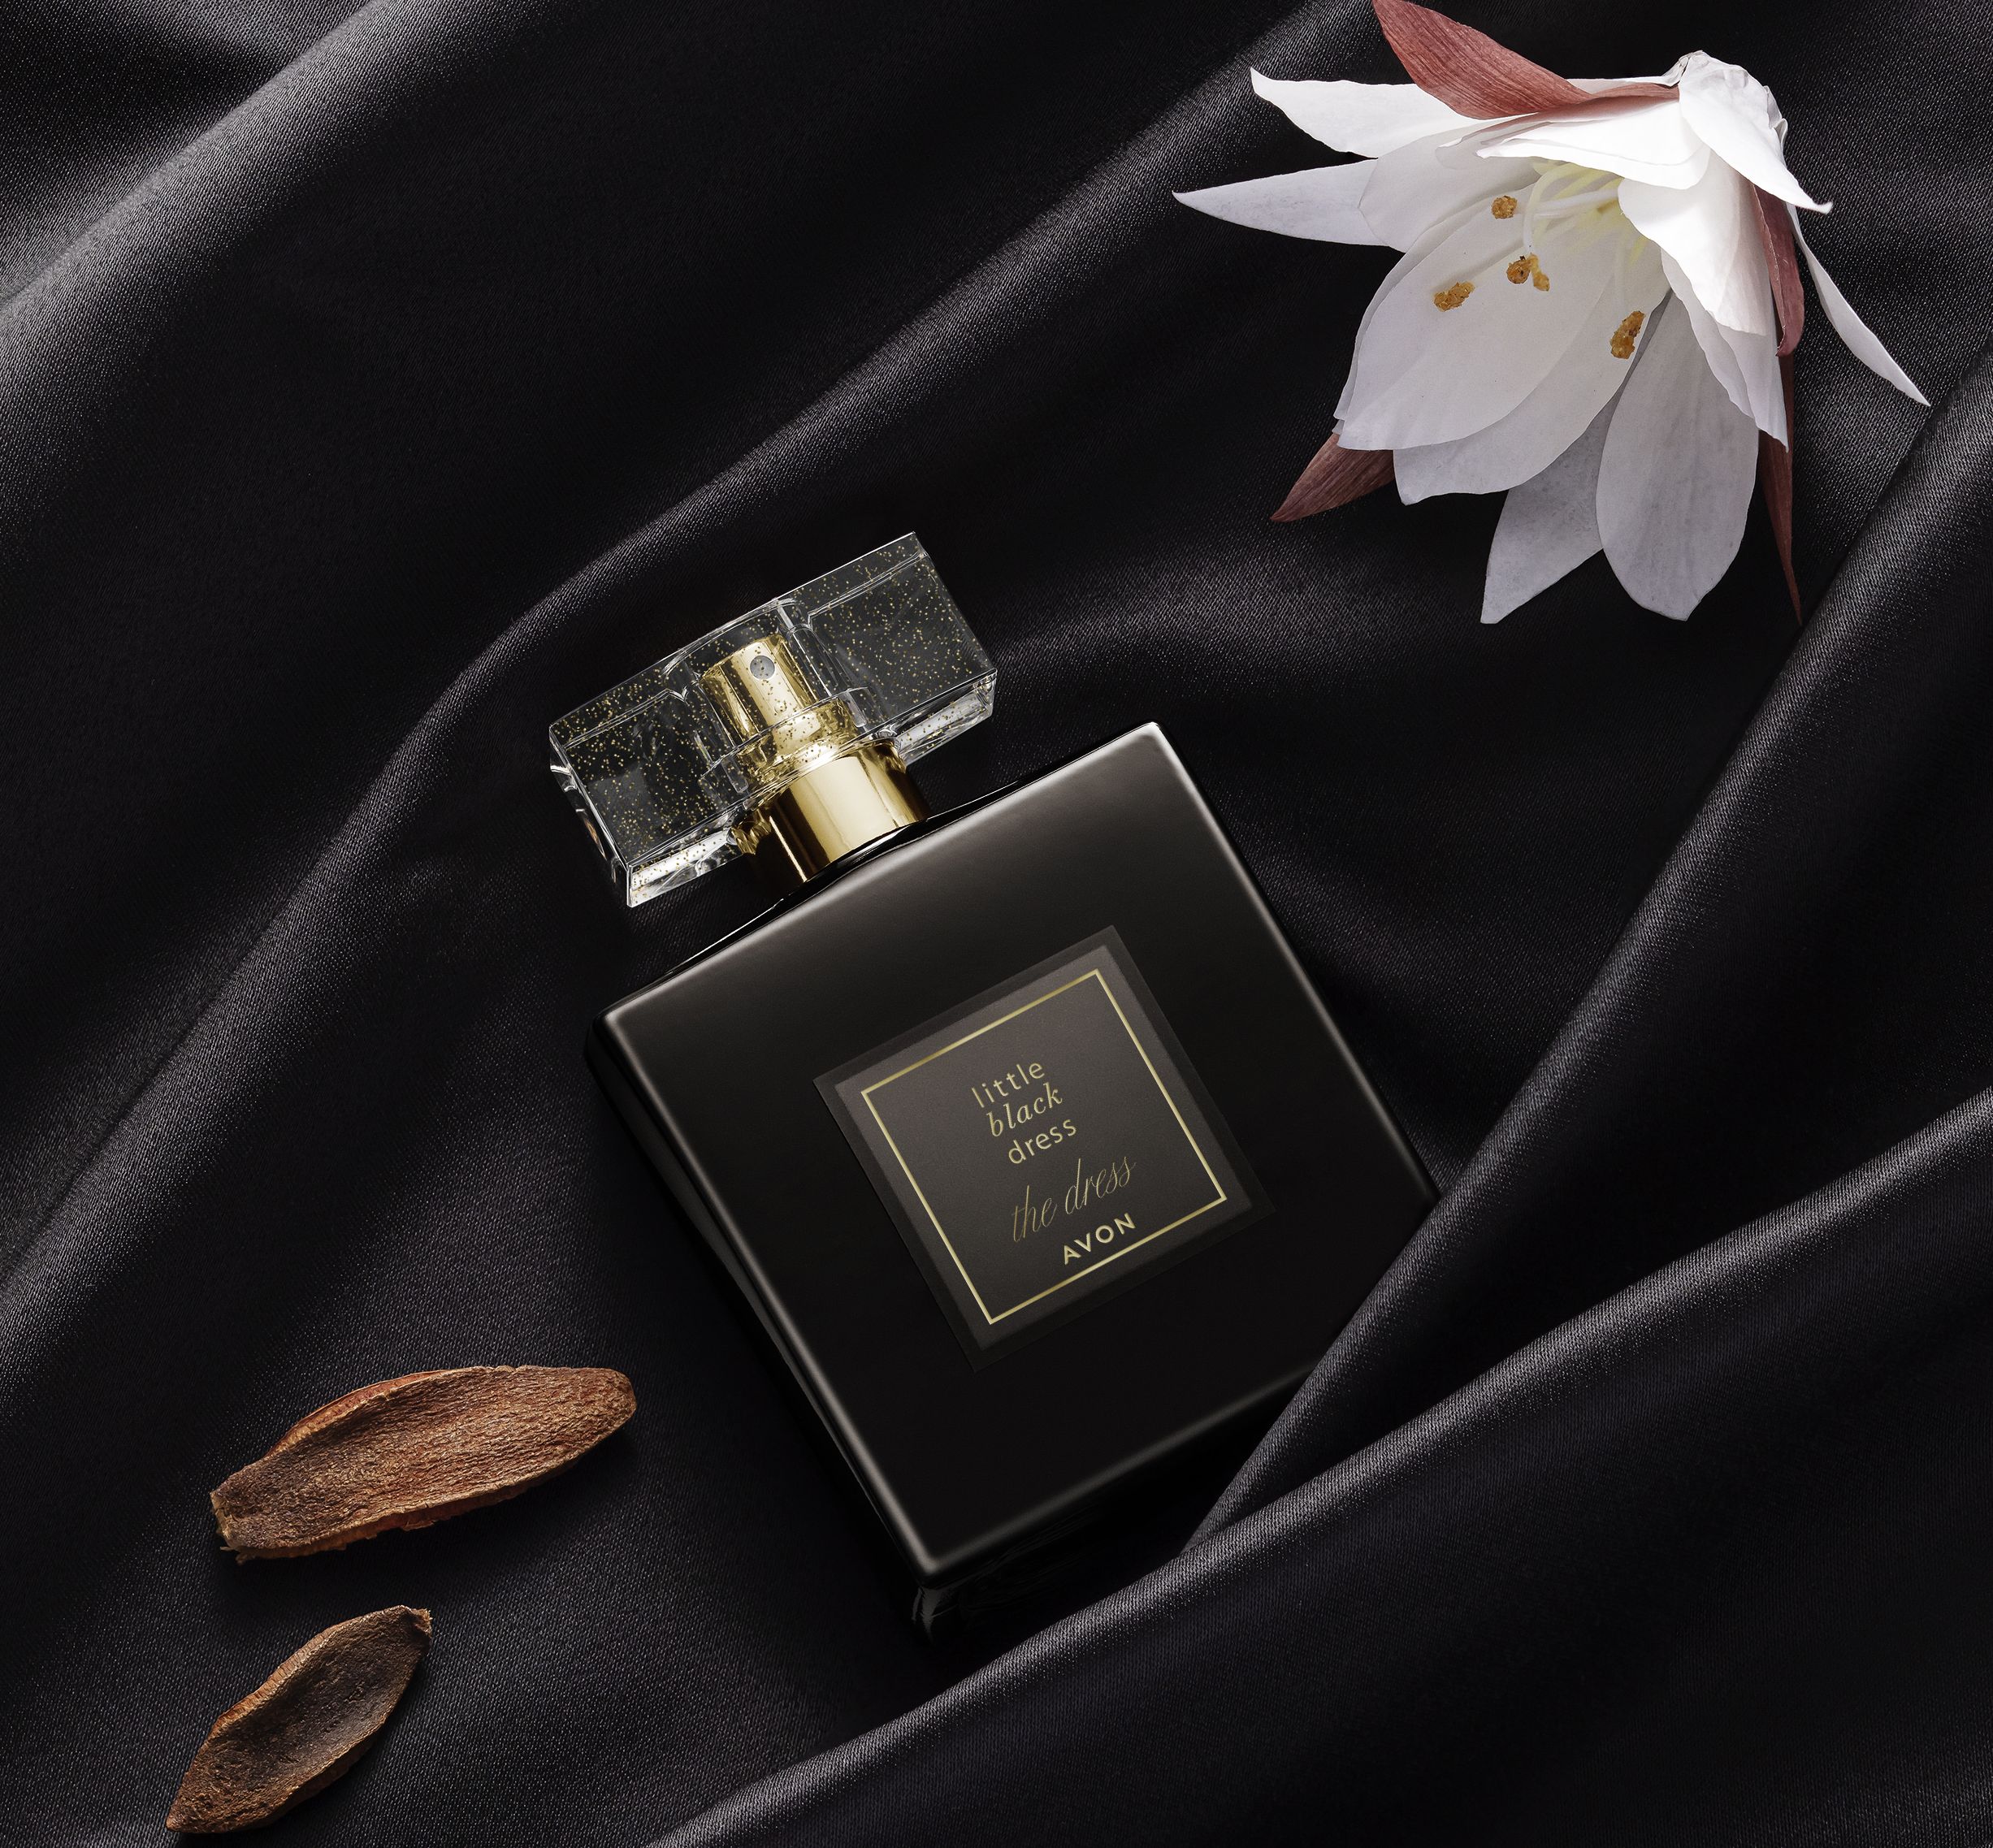 Avon proslavlja 20 godina bezvremenskog, uvijek elegantnog i trendy Little Black Dress parfema i to lansiranjem novog limitiranog izdanja Little Black Dress THE DRESS EdP